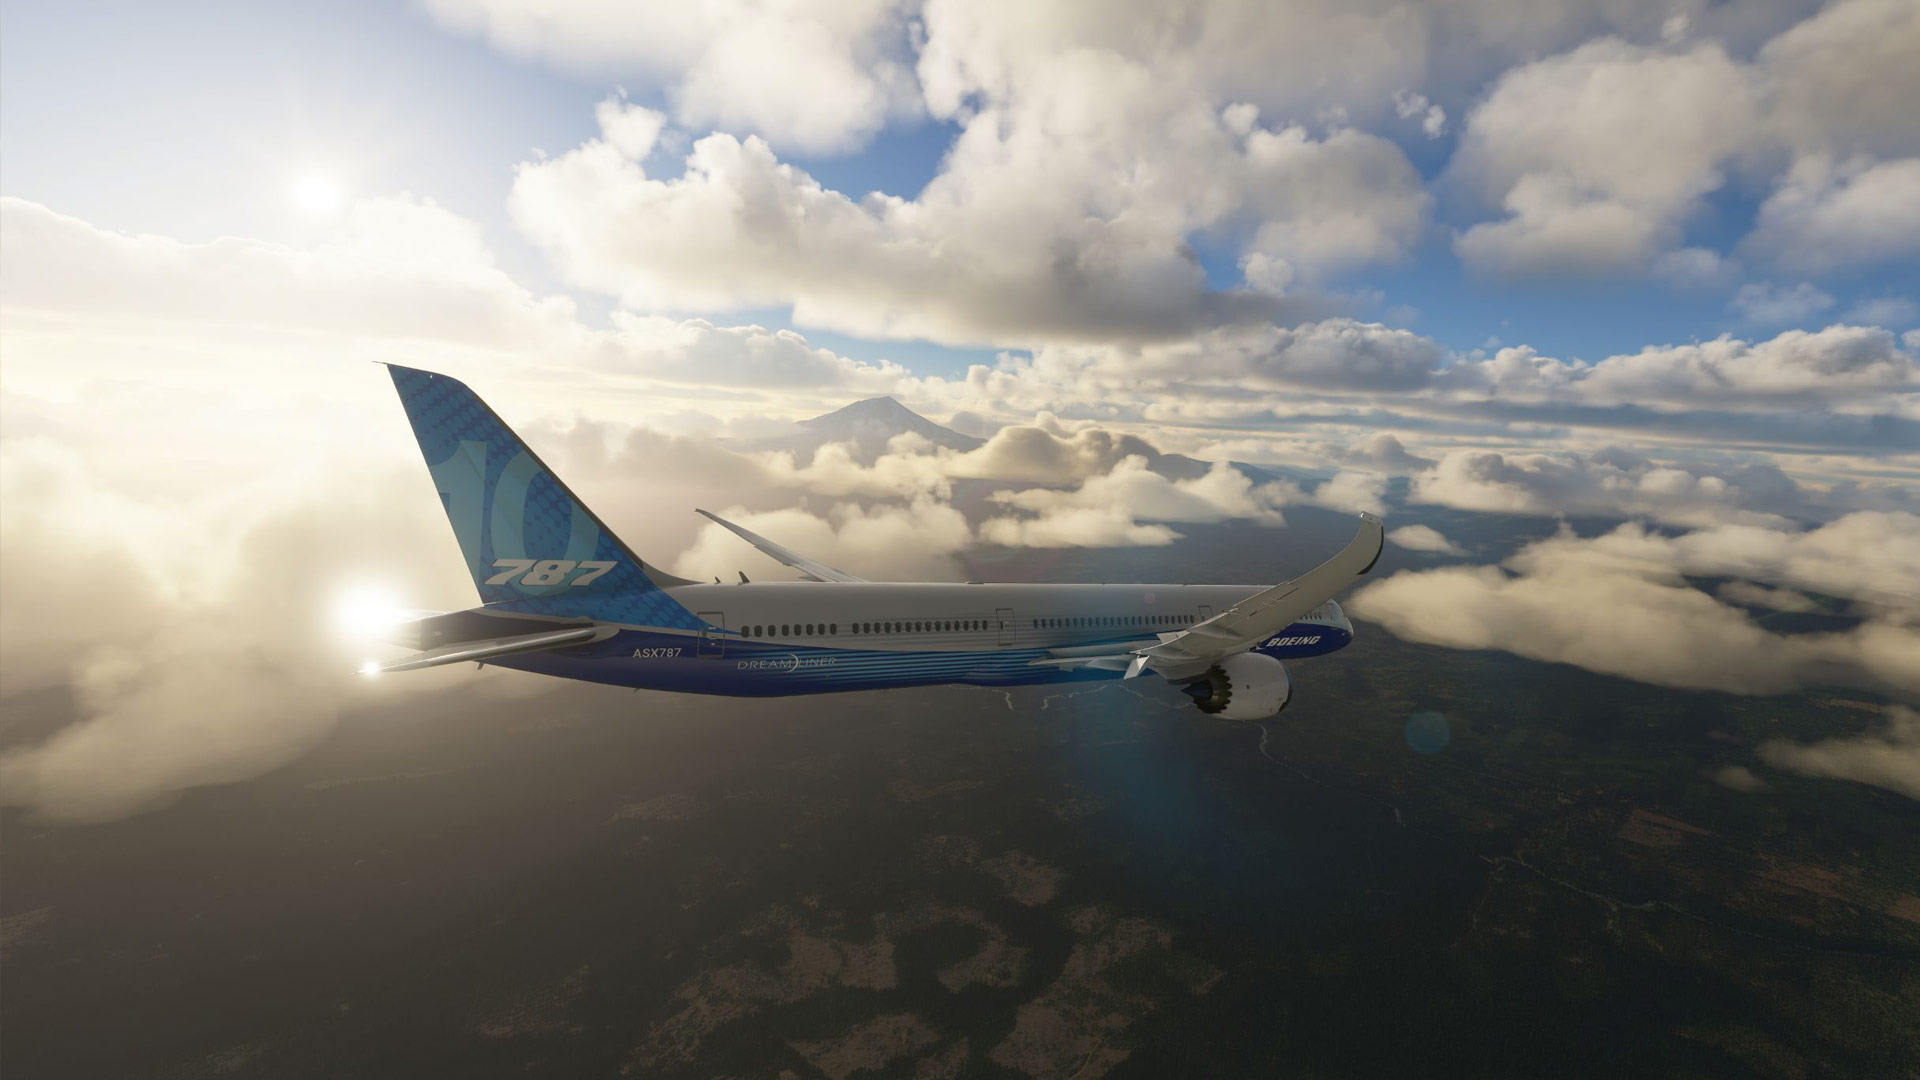 از نسخه GOTY بازی Microsoft Flight Simulator رونمایی شد